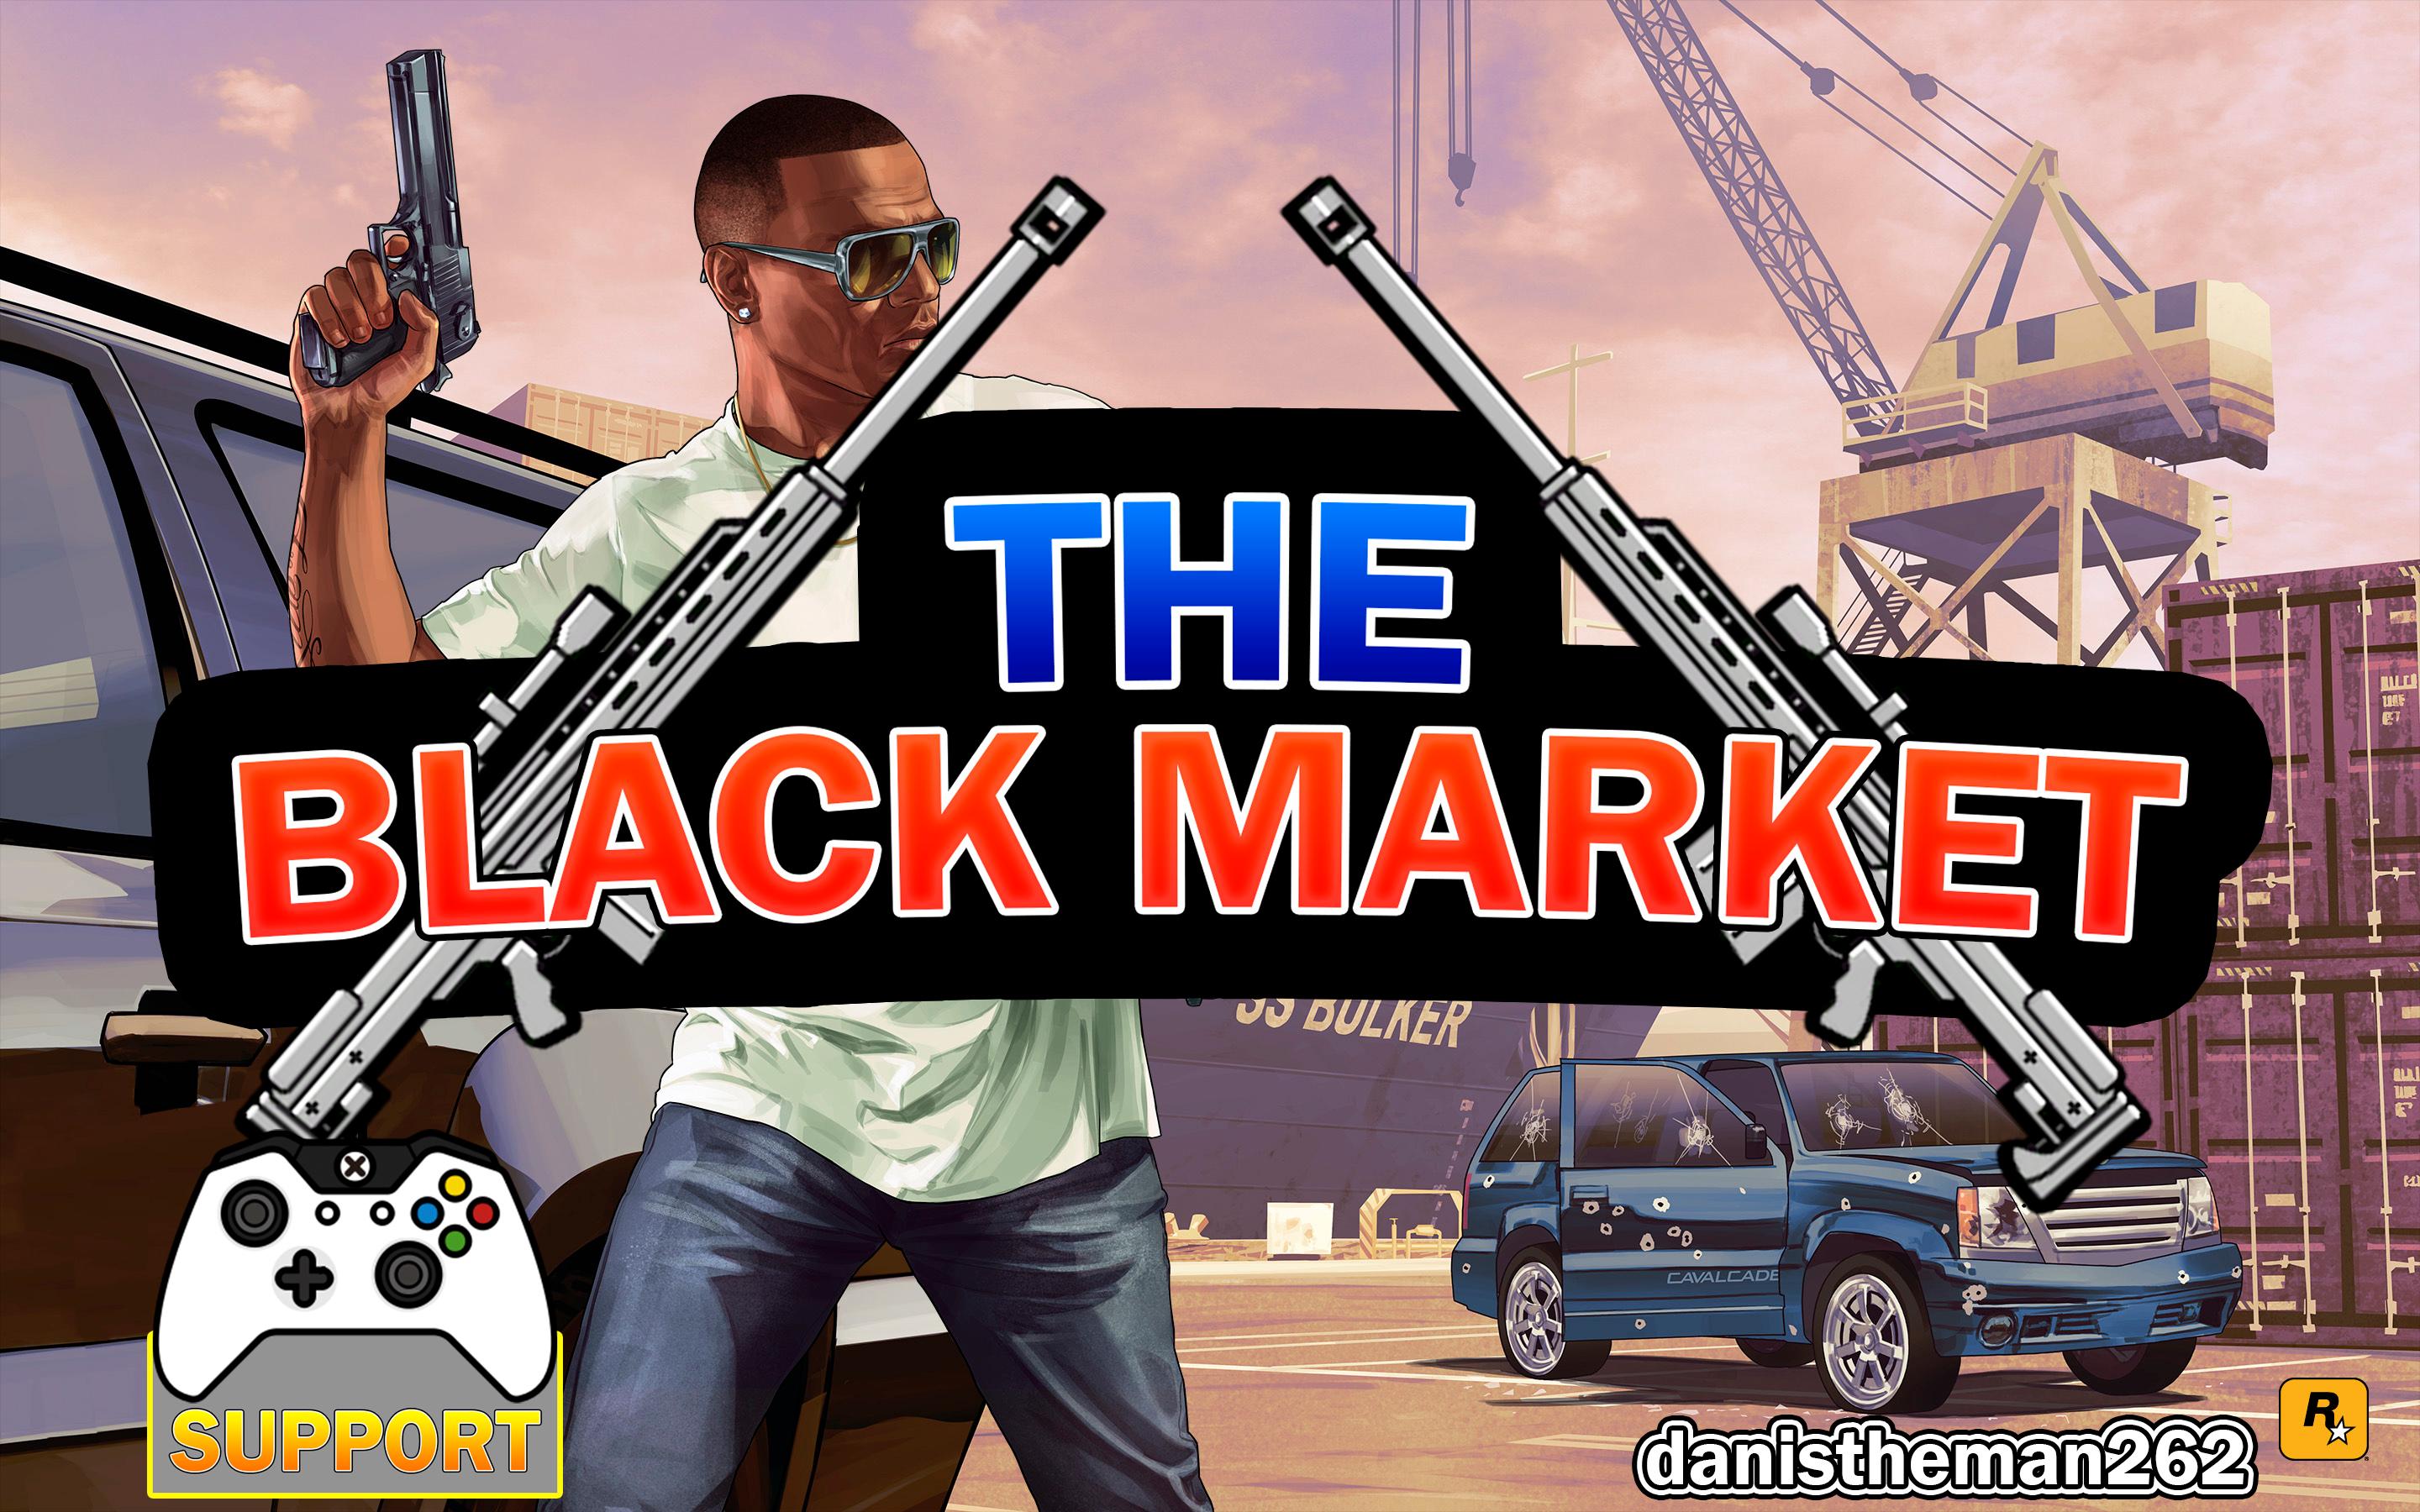 The dark market